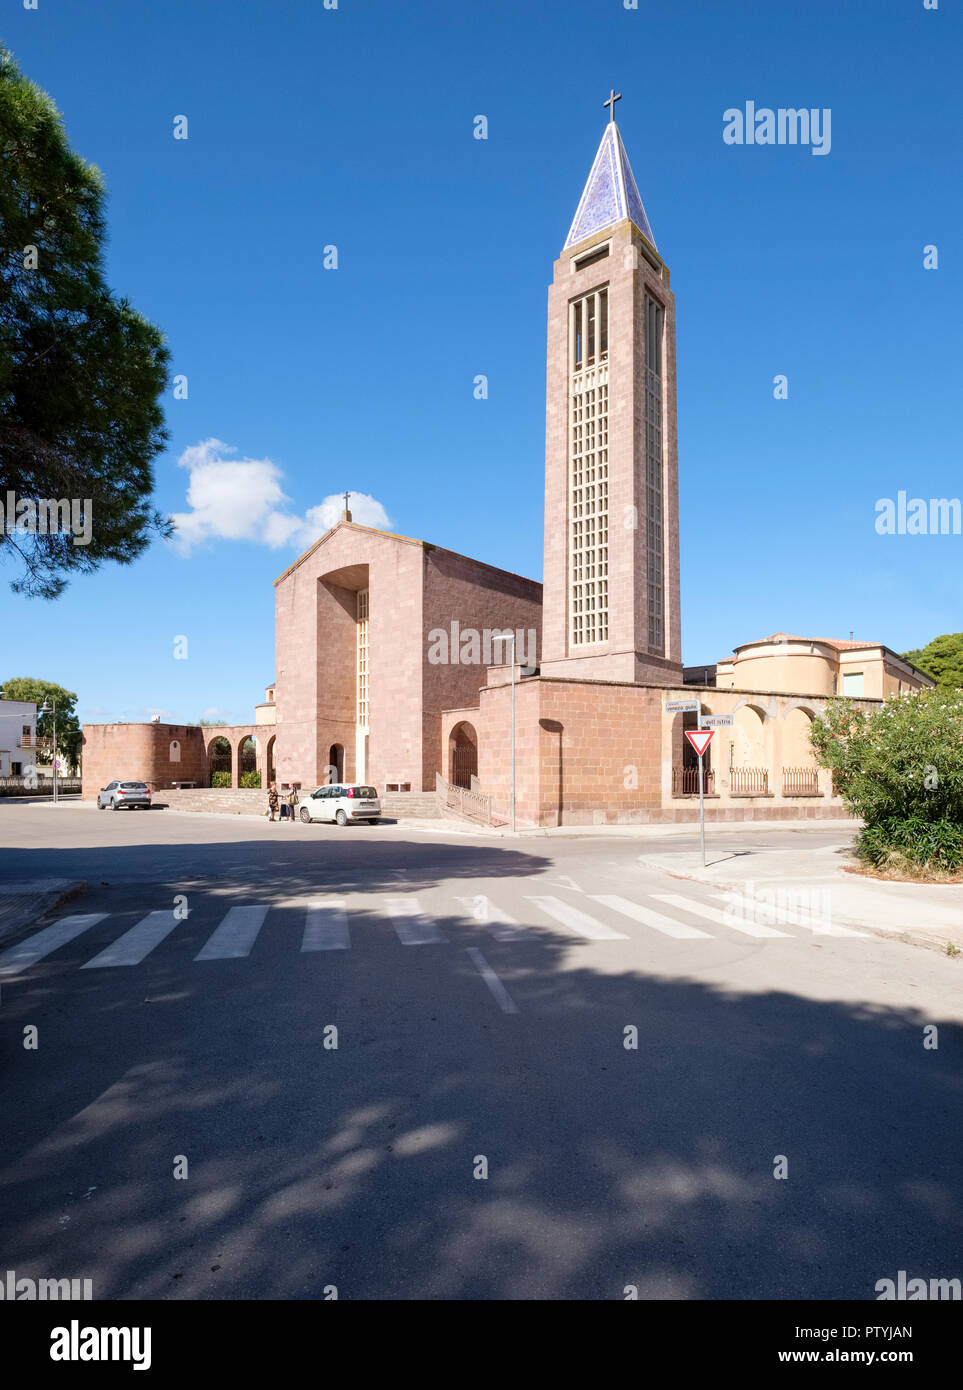 La chiesa parrocchiale di San Marco, Fertilia chiesa parrocchiale di San Marco (1936, 2PST), Italiano stile razionalista, Fertilia, Sardegna, Italia Foto Stock